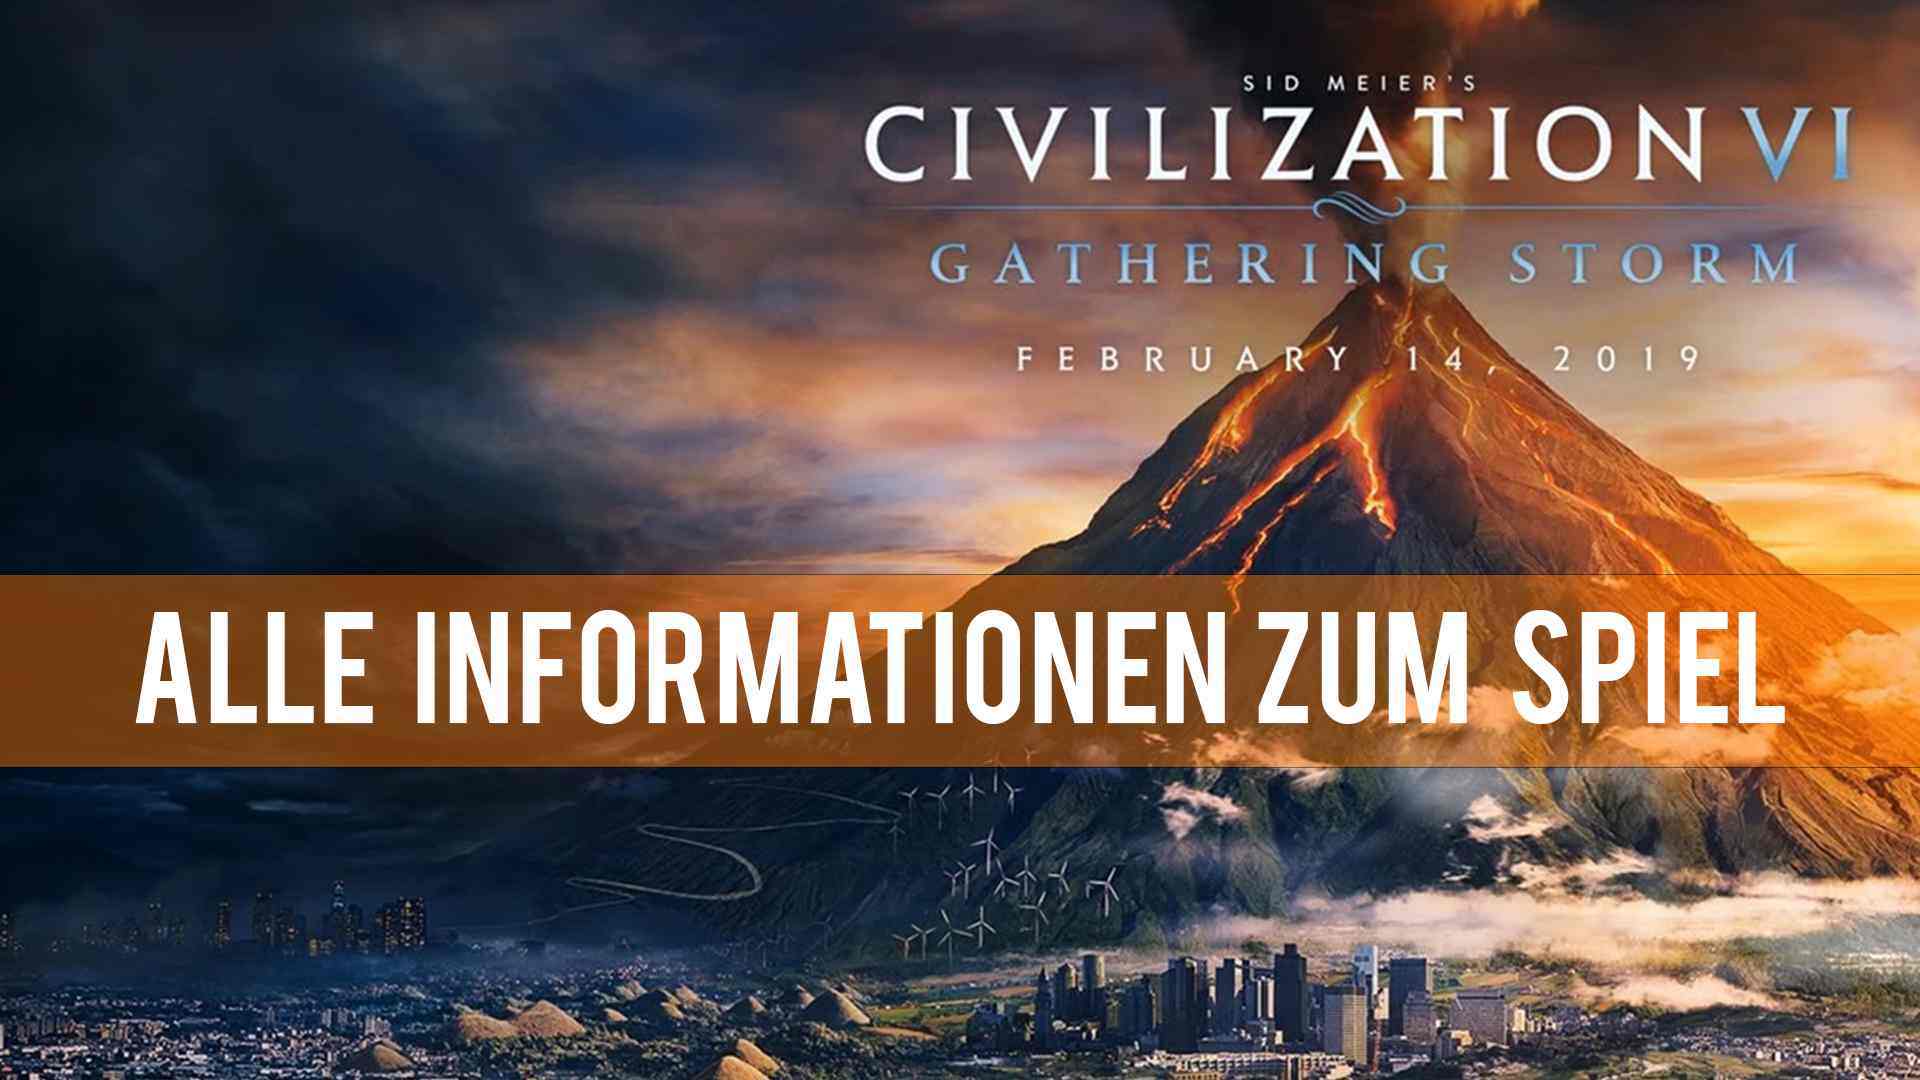 Civilization 6 - Gathering Storm mit Naturkatastrophen und Weltkongress